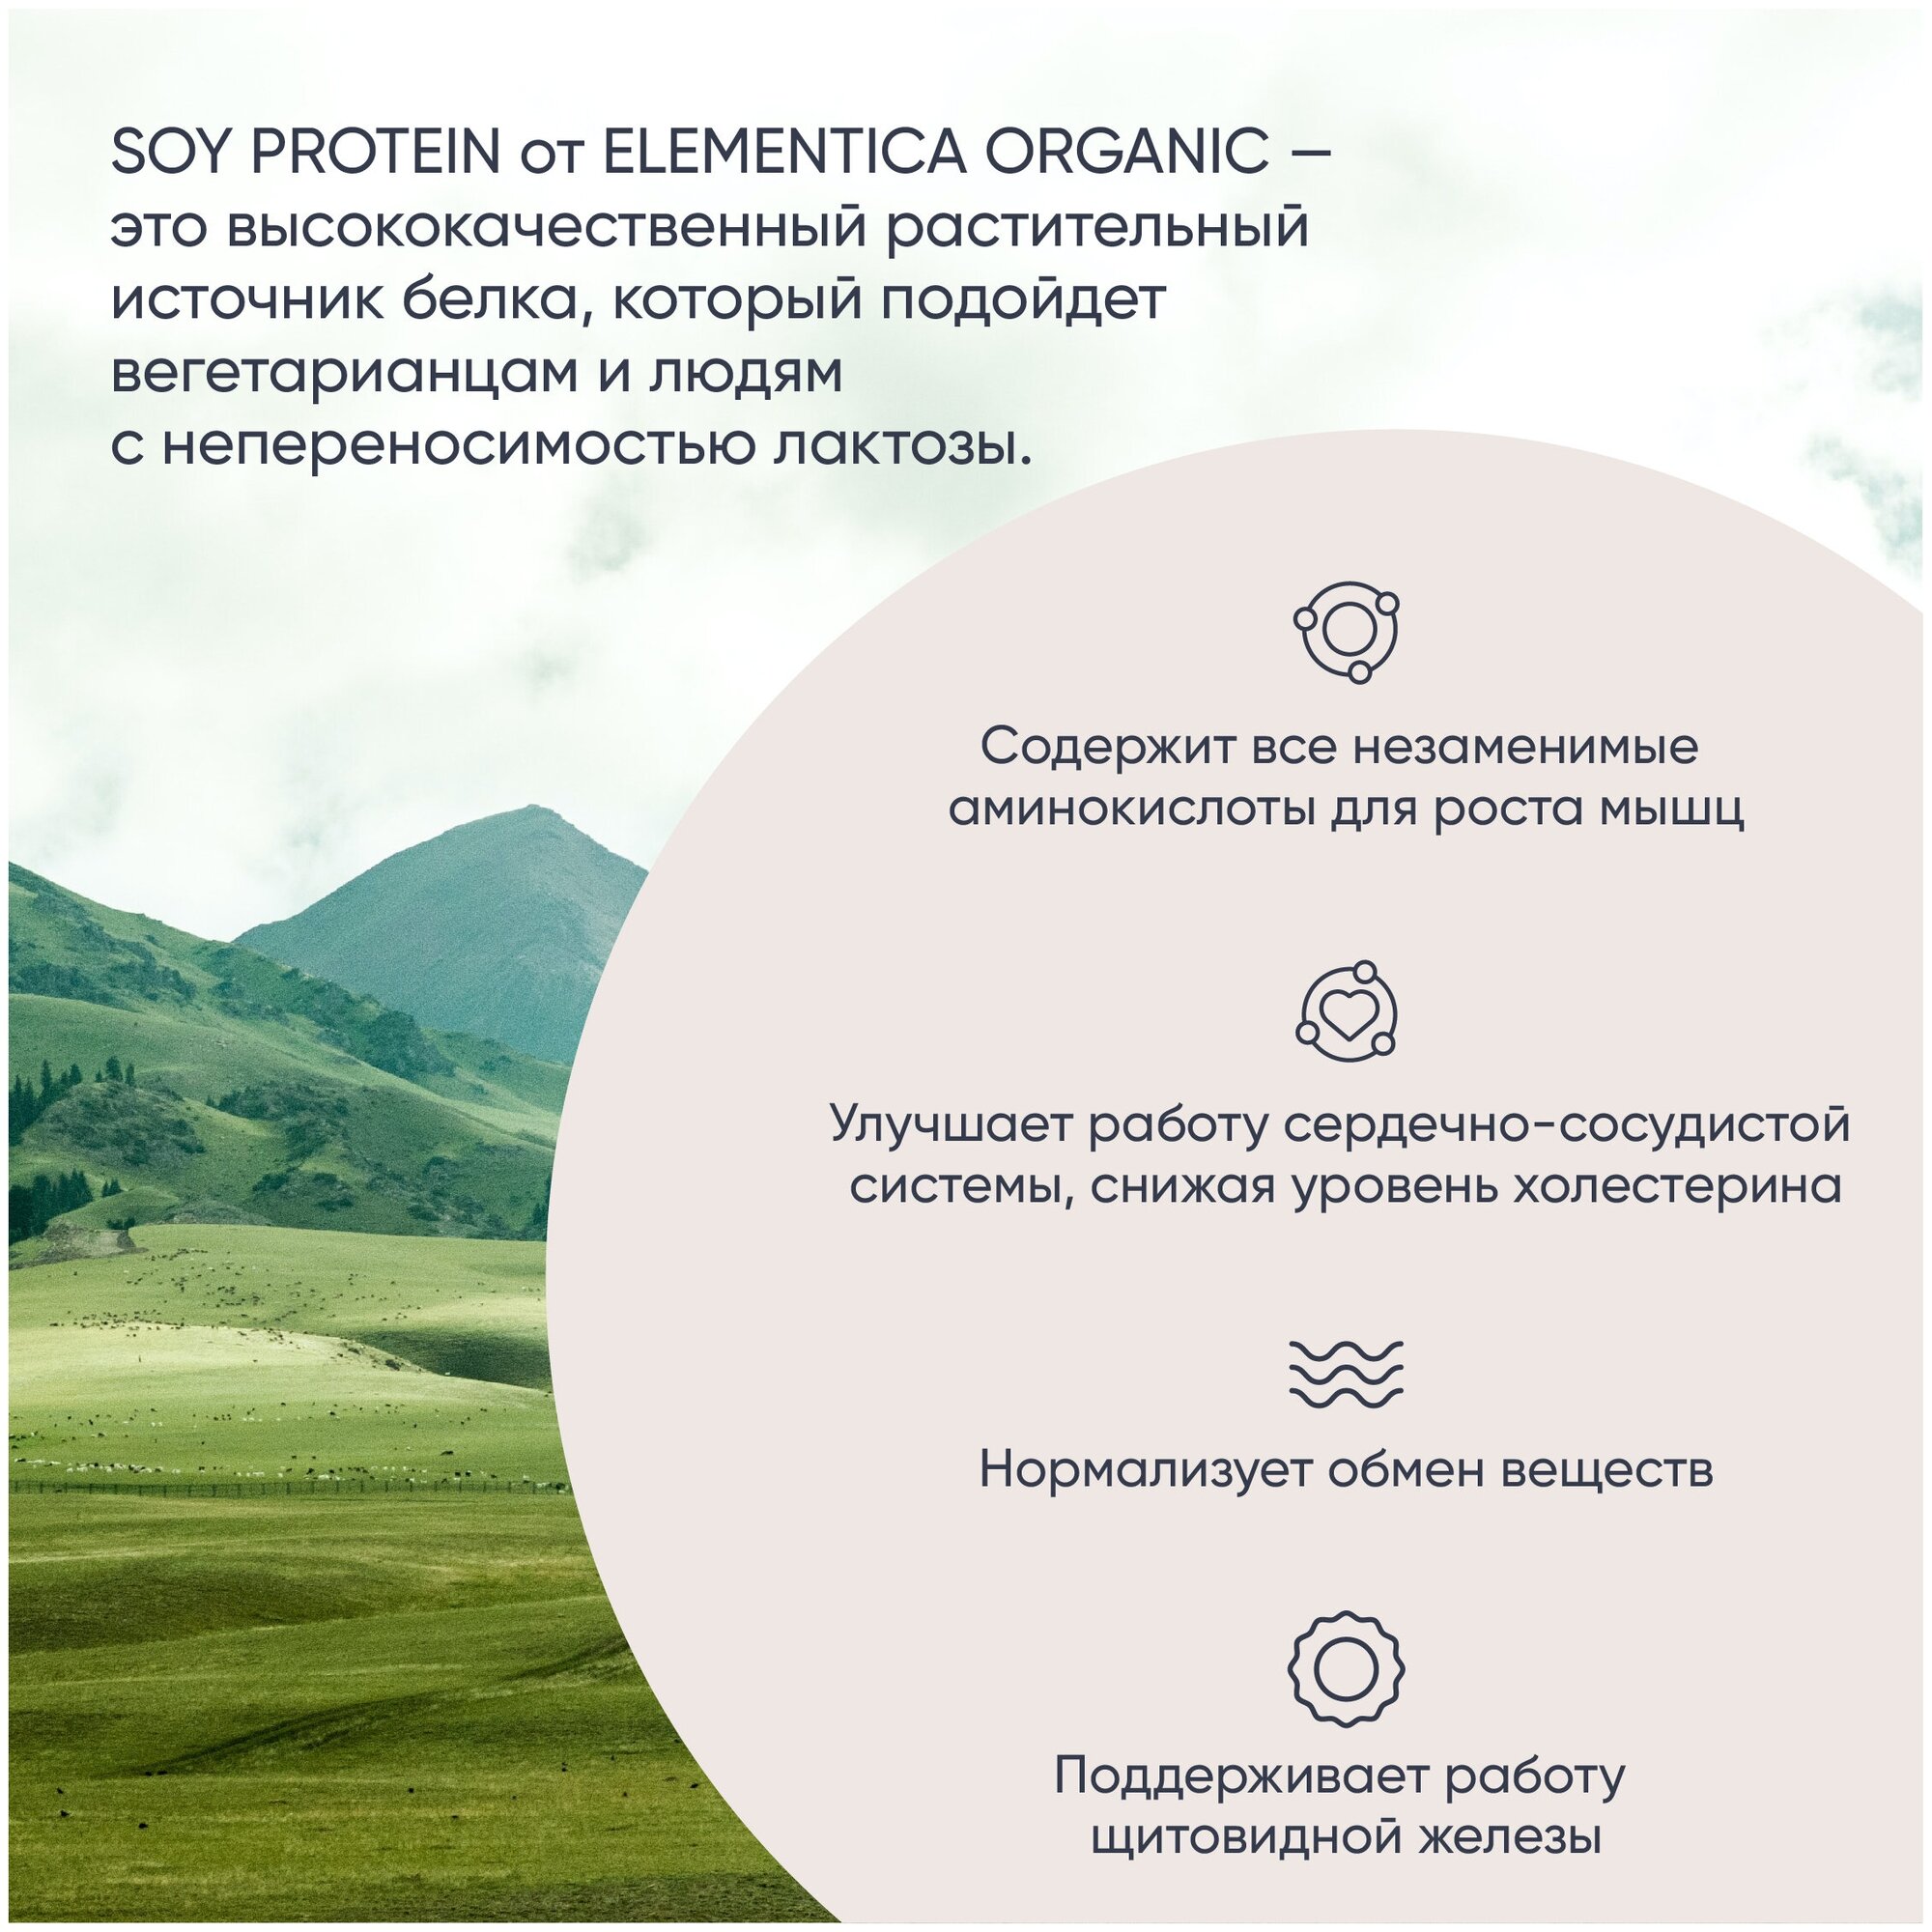 Соевый протеин, изолят соевого белка, soy protein, растительный, порошок, ягодный микс, 300 г